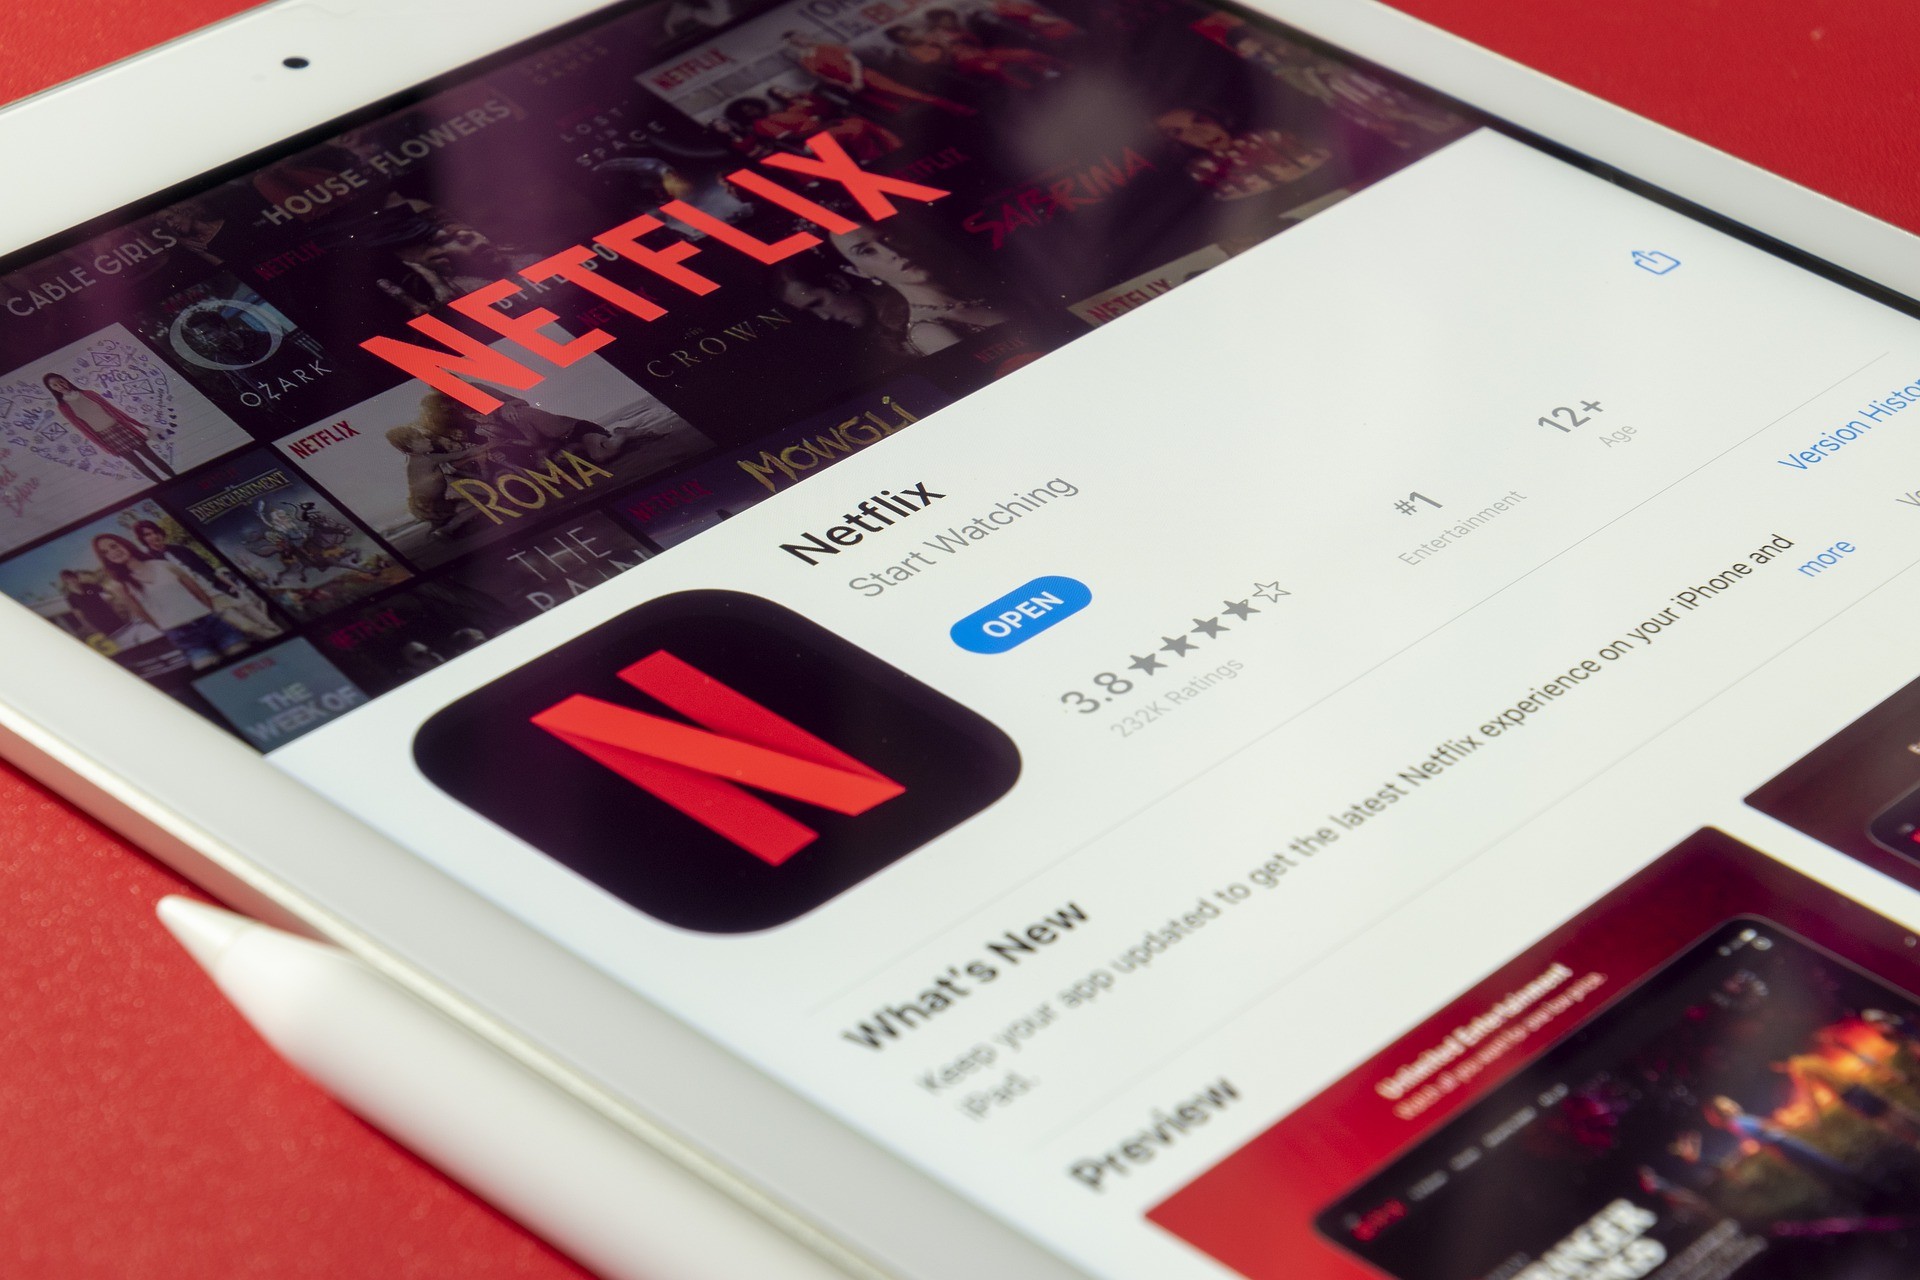 Netflix es el servicio de streaming de video preferido de los brasileños, según encuesta